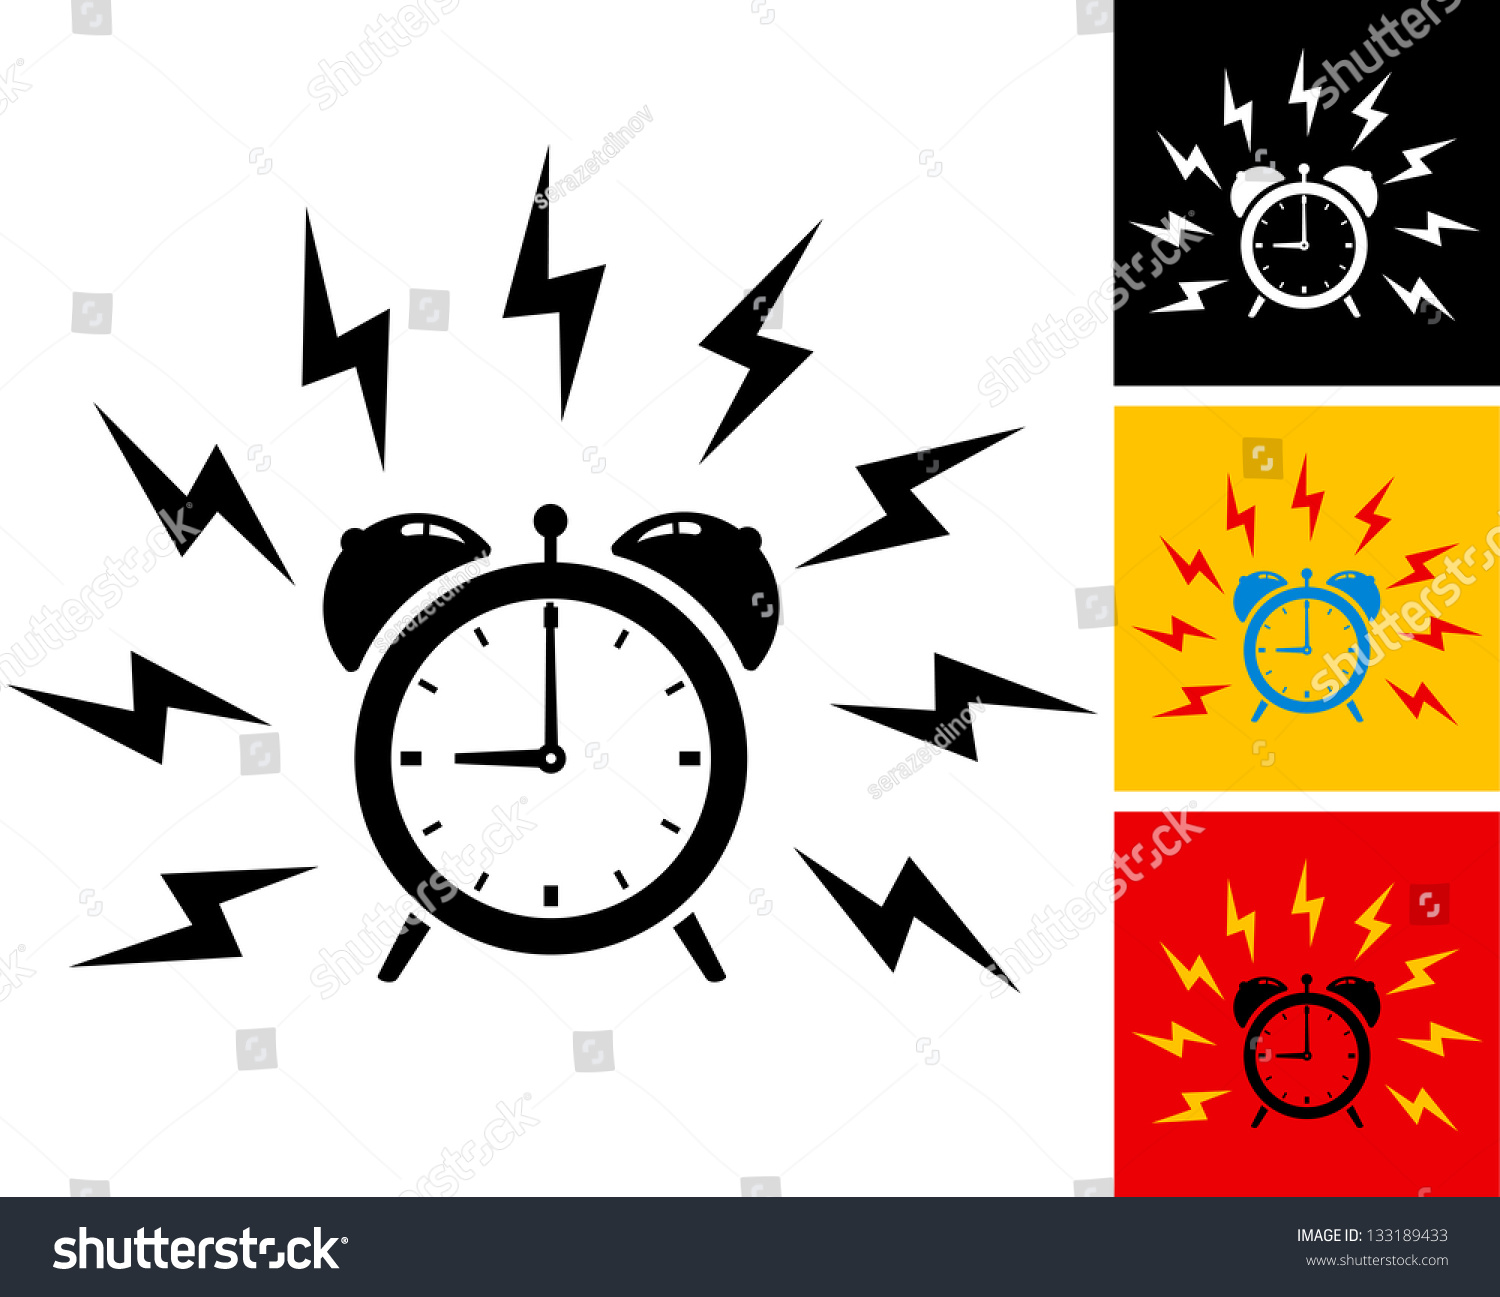 illustration of alarm clock ringing #133189433